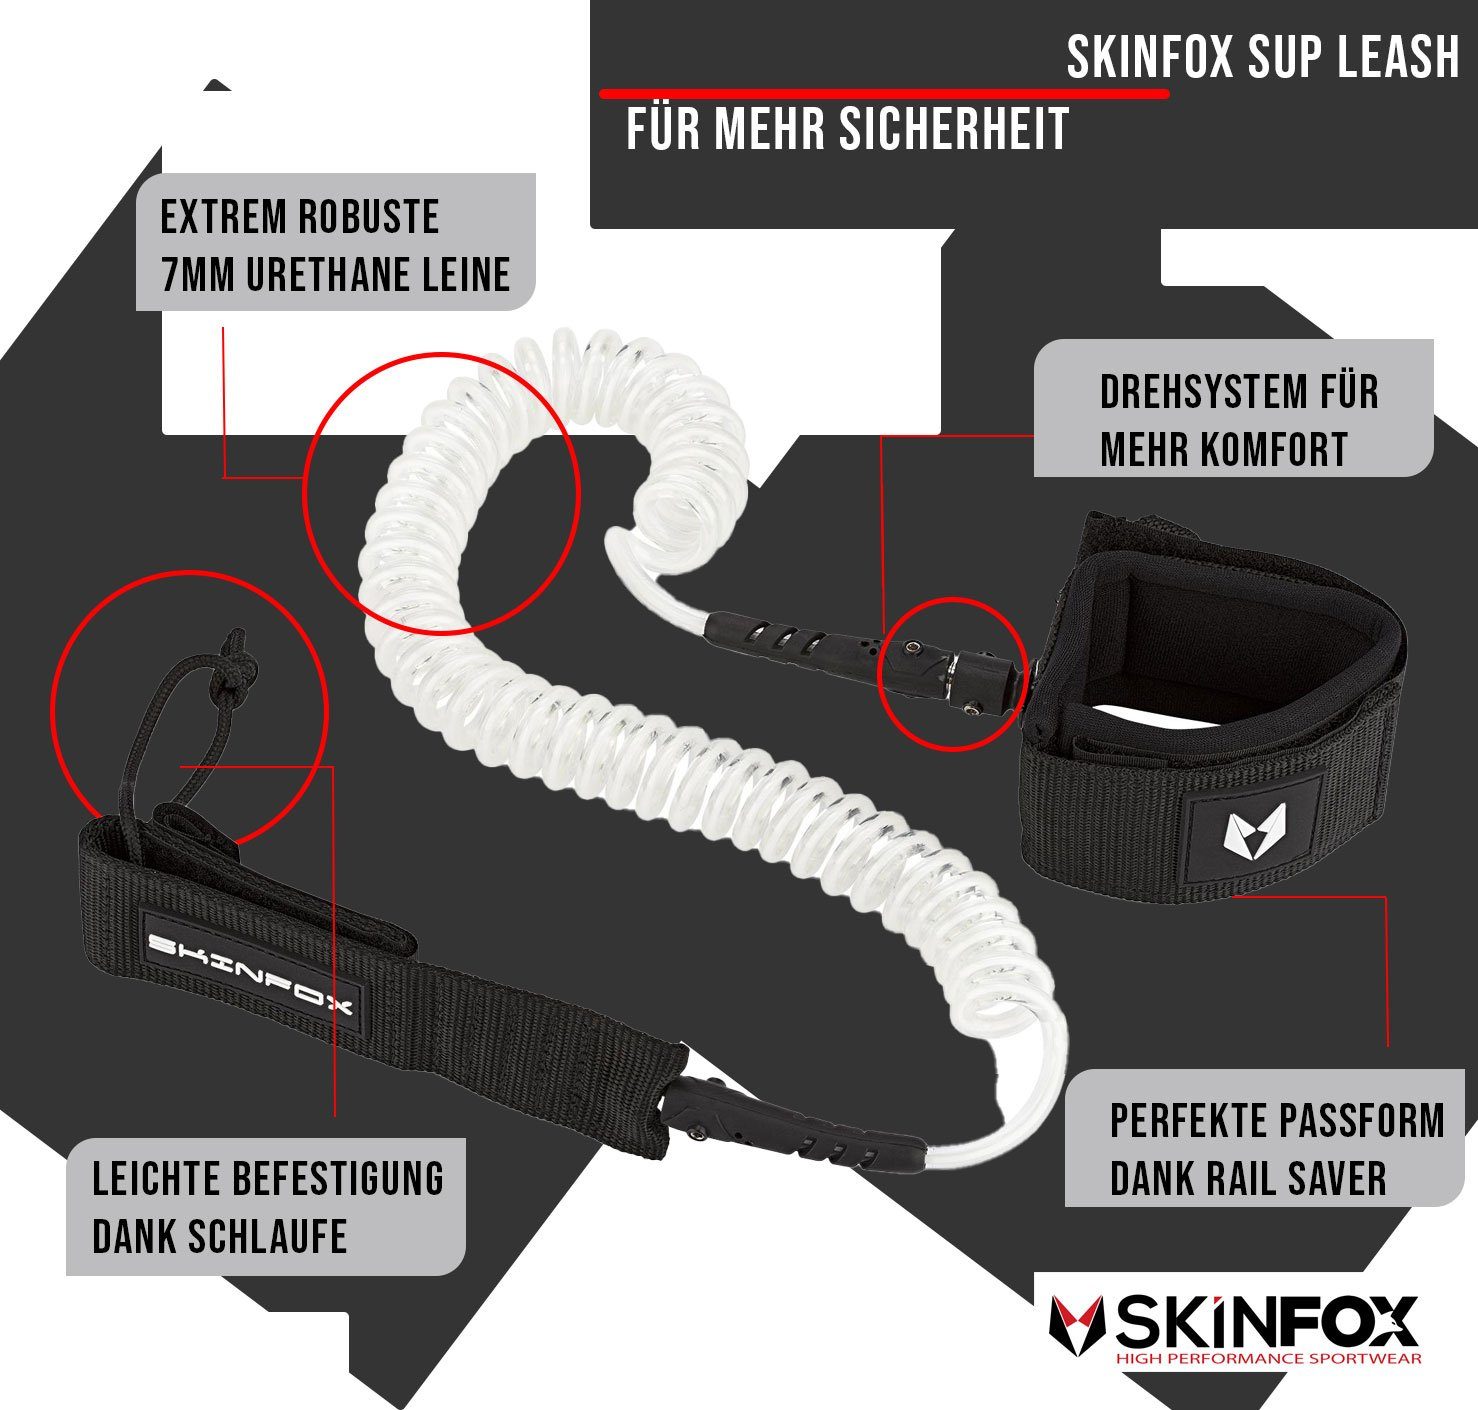 Skinfox SUP-Leash SKINFOX Leash Stand Leine Coiled Paddle und Fussleine Surfboard Up für Board SUP